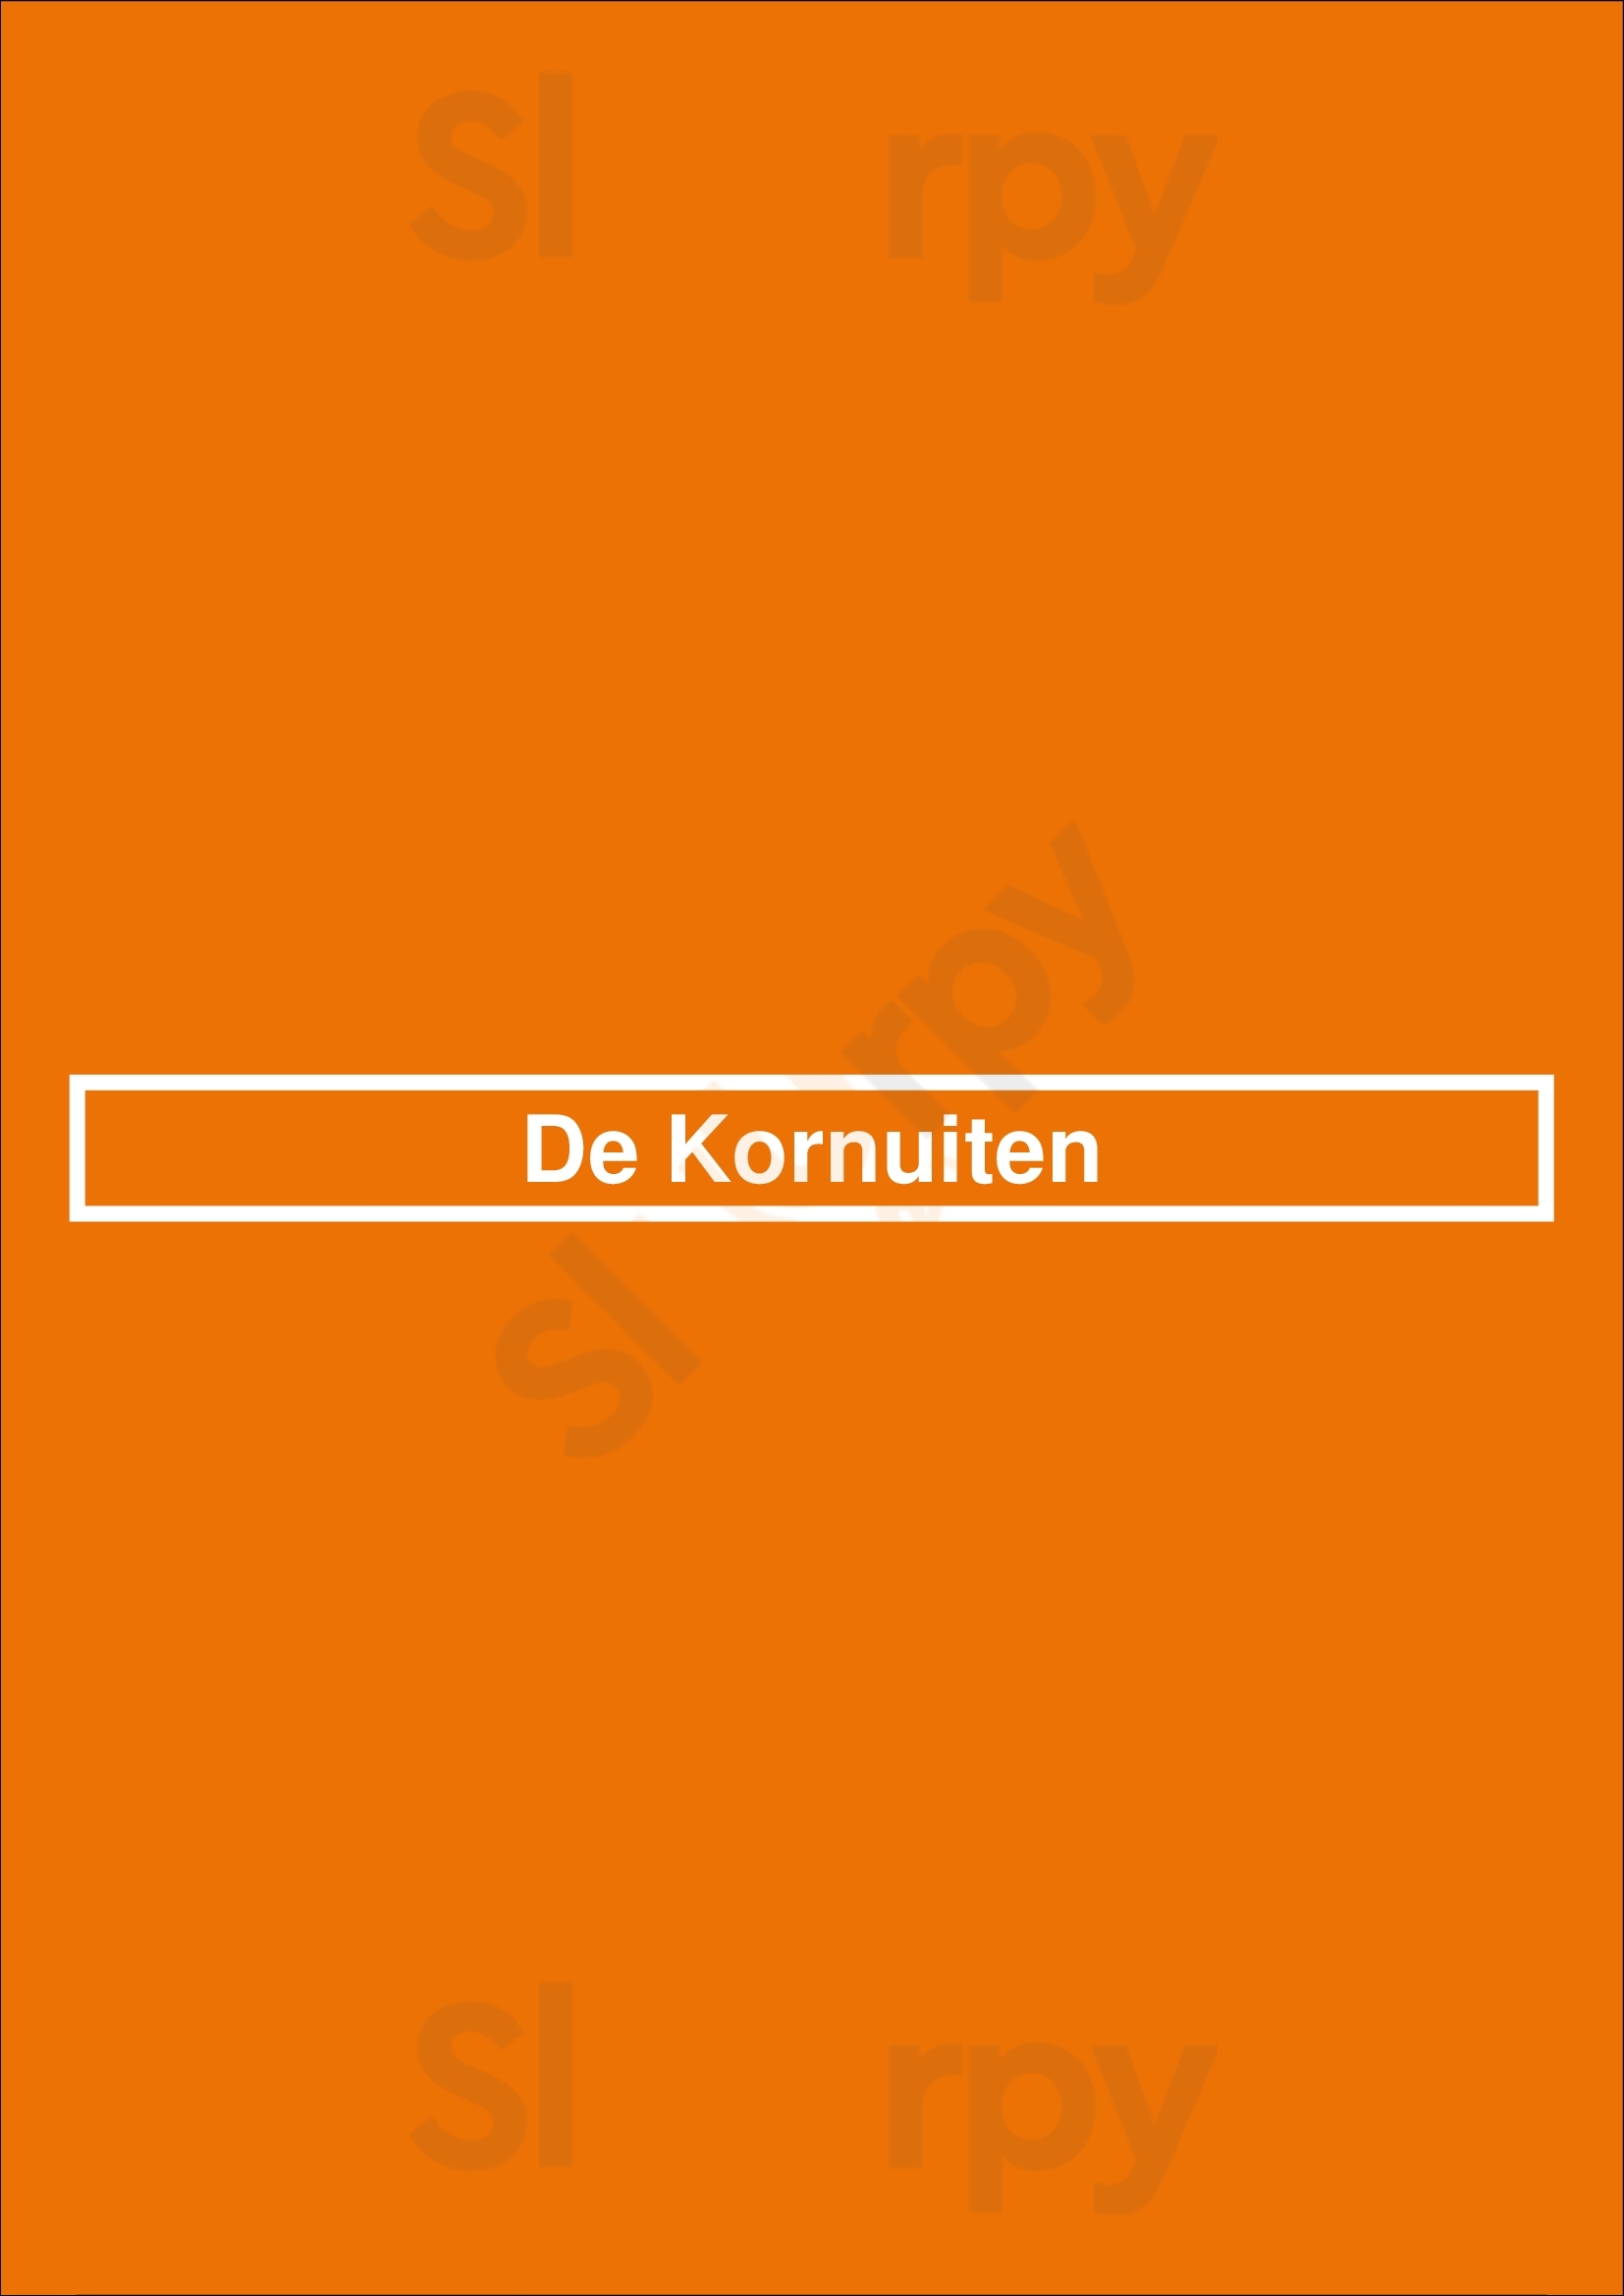 De Kornuiten Groningen Menu - 1